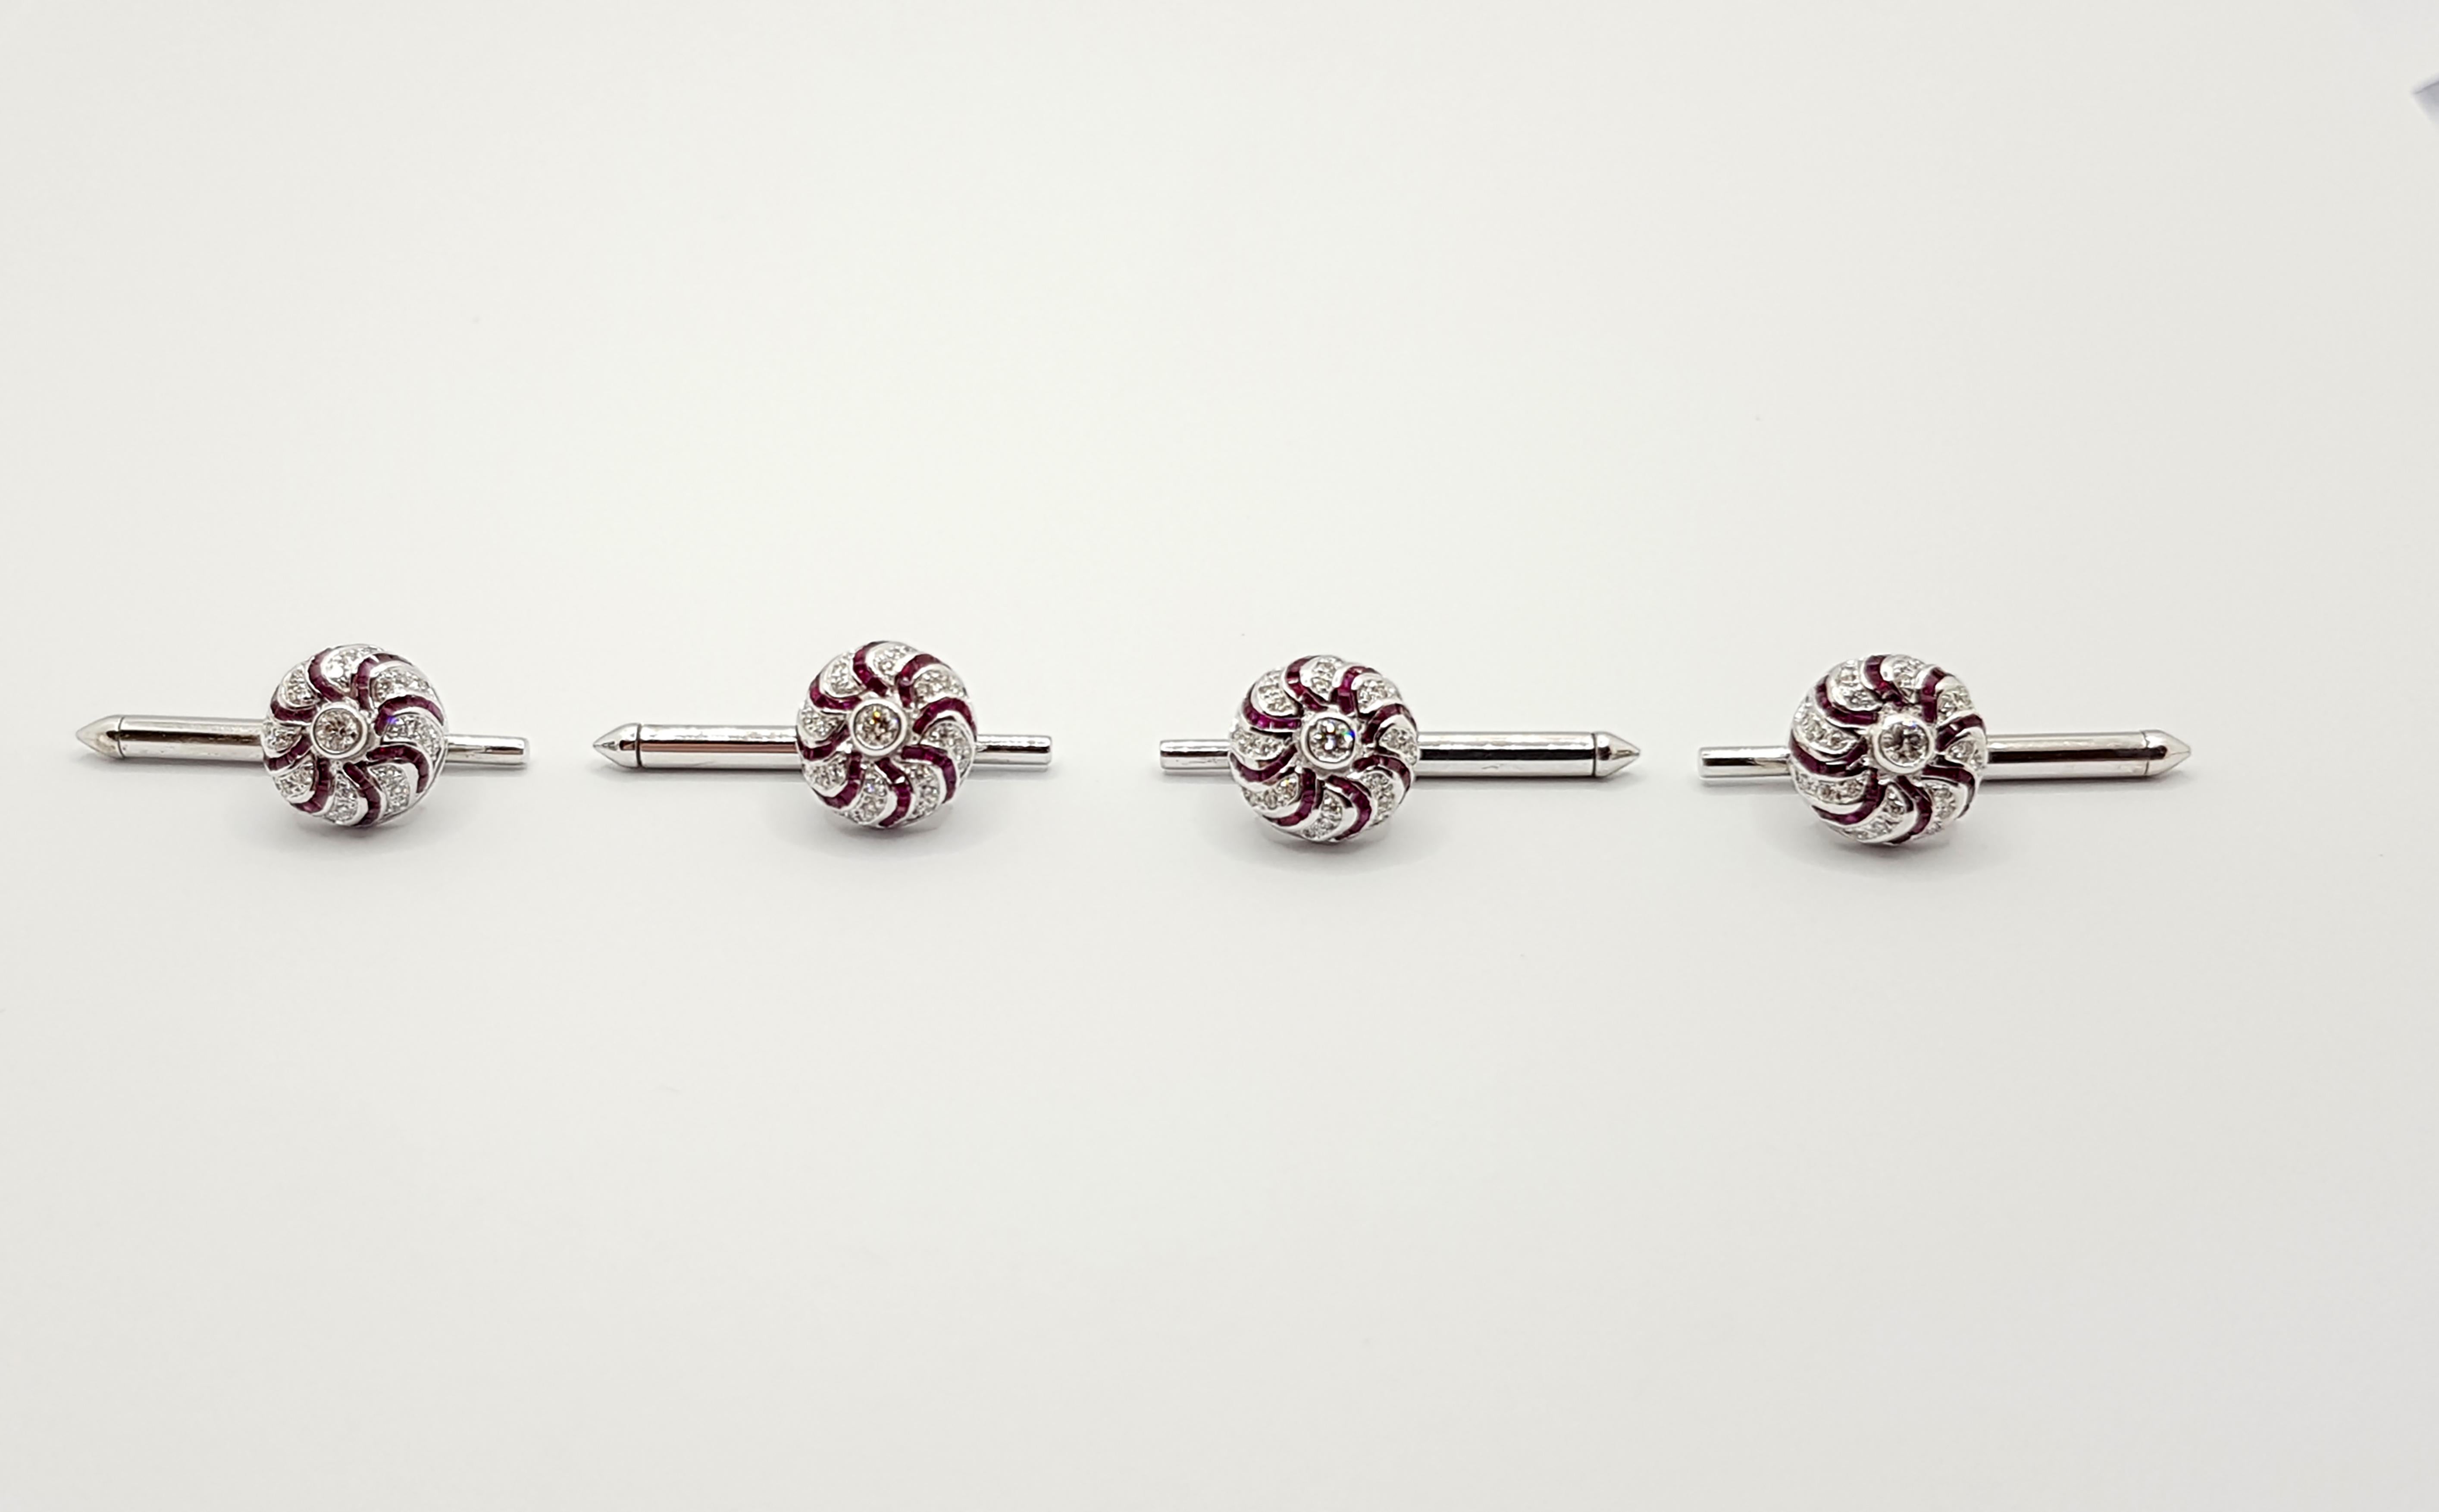 Rubis 4.01 carats avec diamants 0.46 carat Tuxedo Buttons set in 18 Karat White Gold Settings (set of 4)

Largeur :  1.0 cm 
Longueur : 1.0 cm
Poids total : 11,28 grammes

